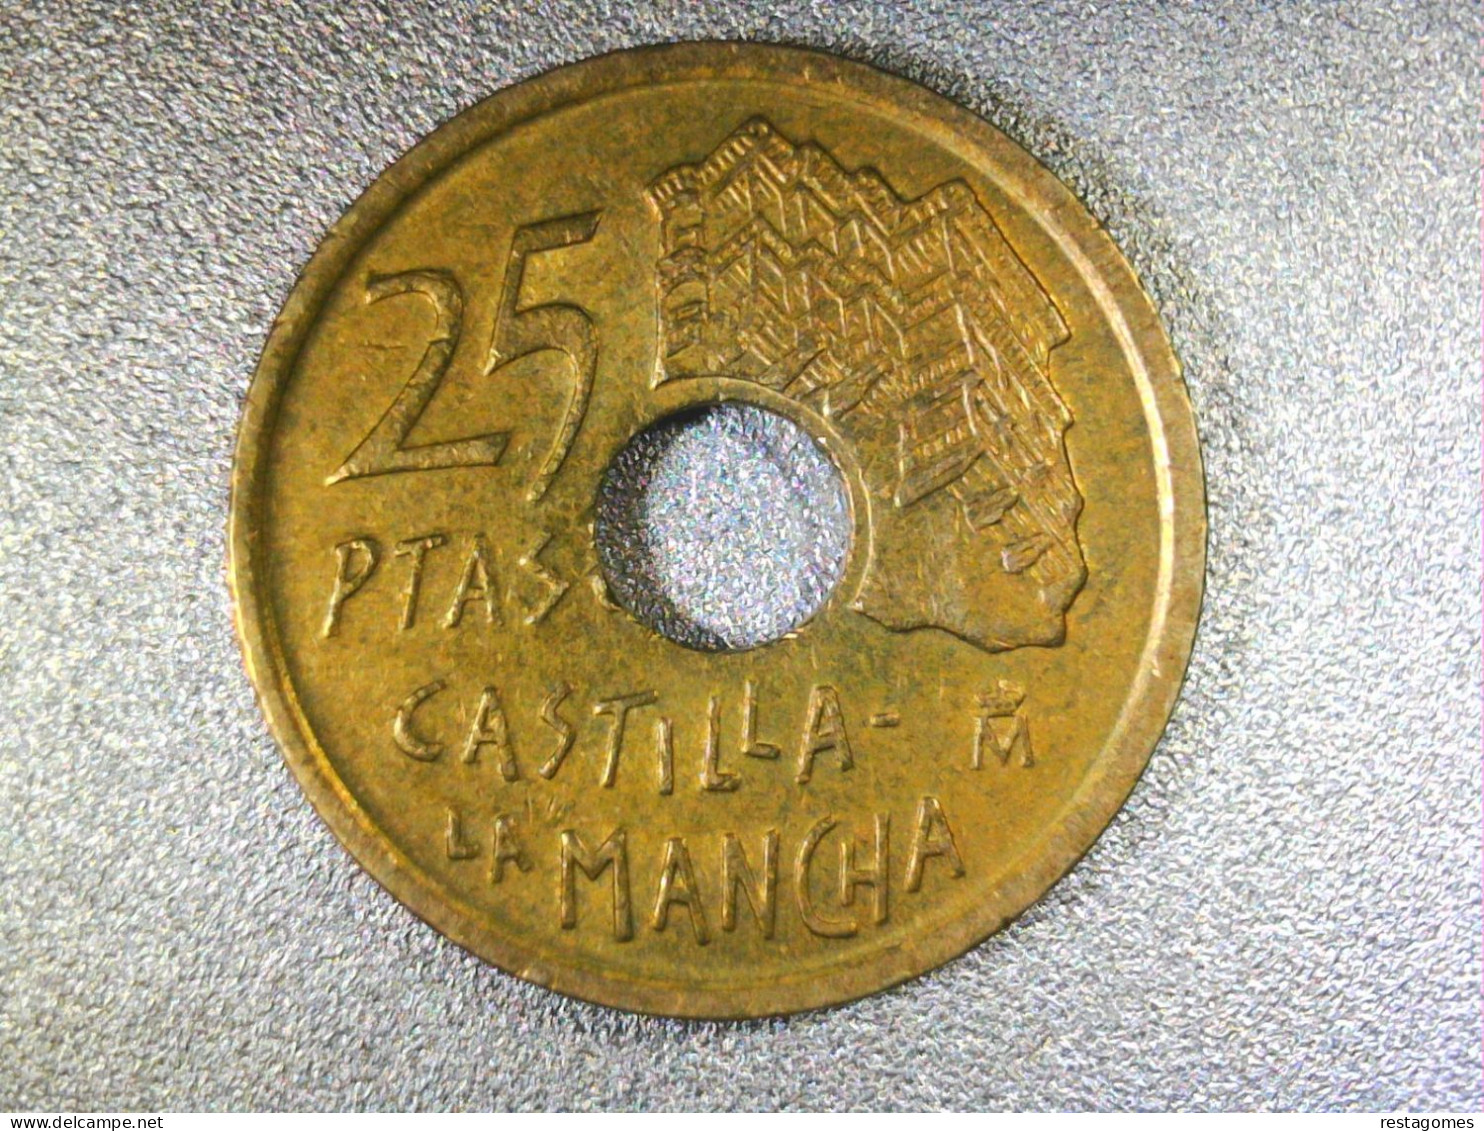 ESPAGNE . 25 PESETAS 1996 . CASTILLA LA MANCHA - SPAIN - SPAGNA - 1 Peseta